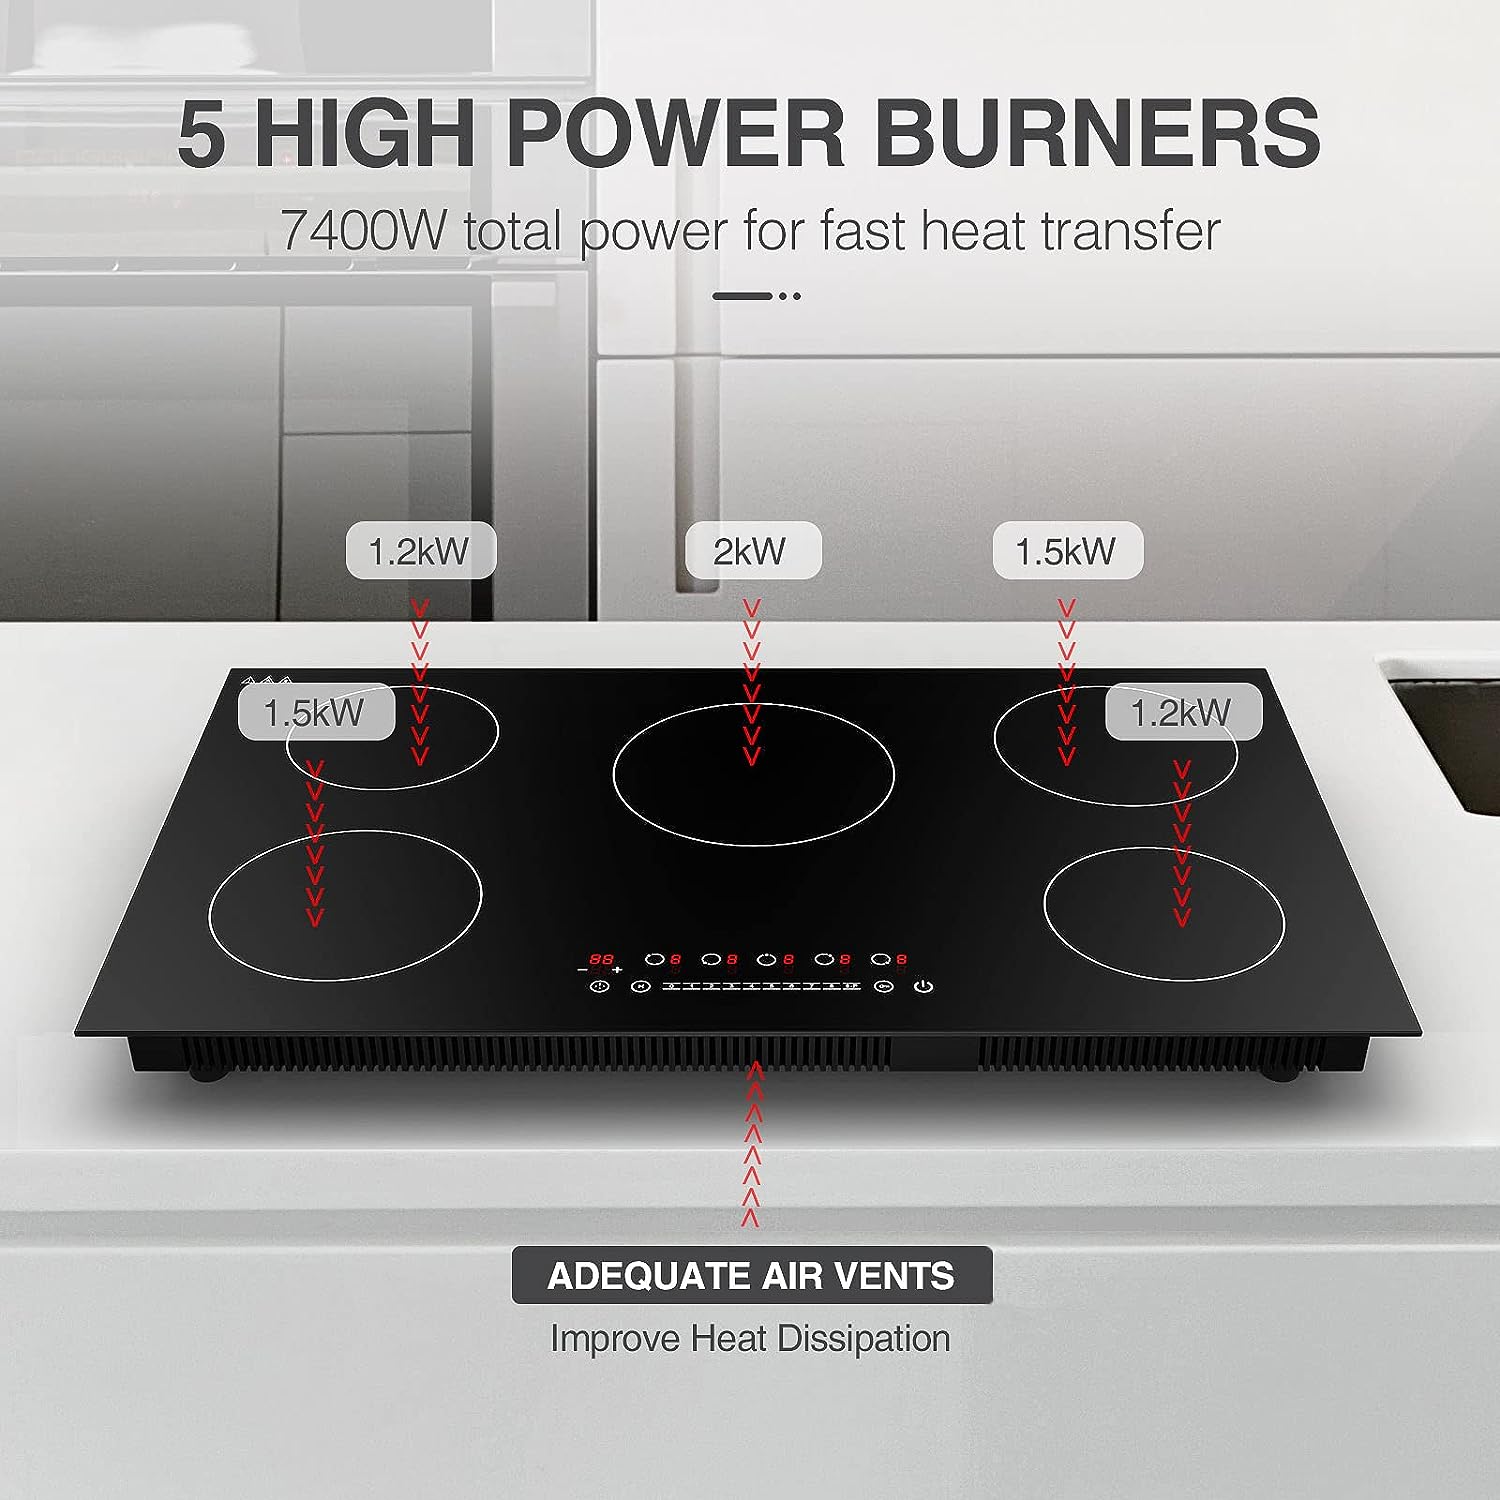 VBGK Induction Cooktop with 5 Burners Desktop, 7400W 240V, Black - $215